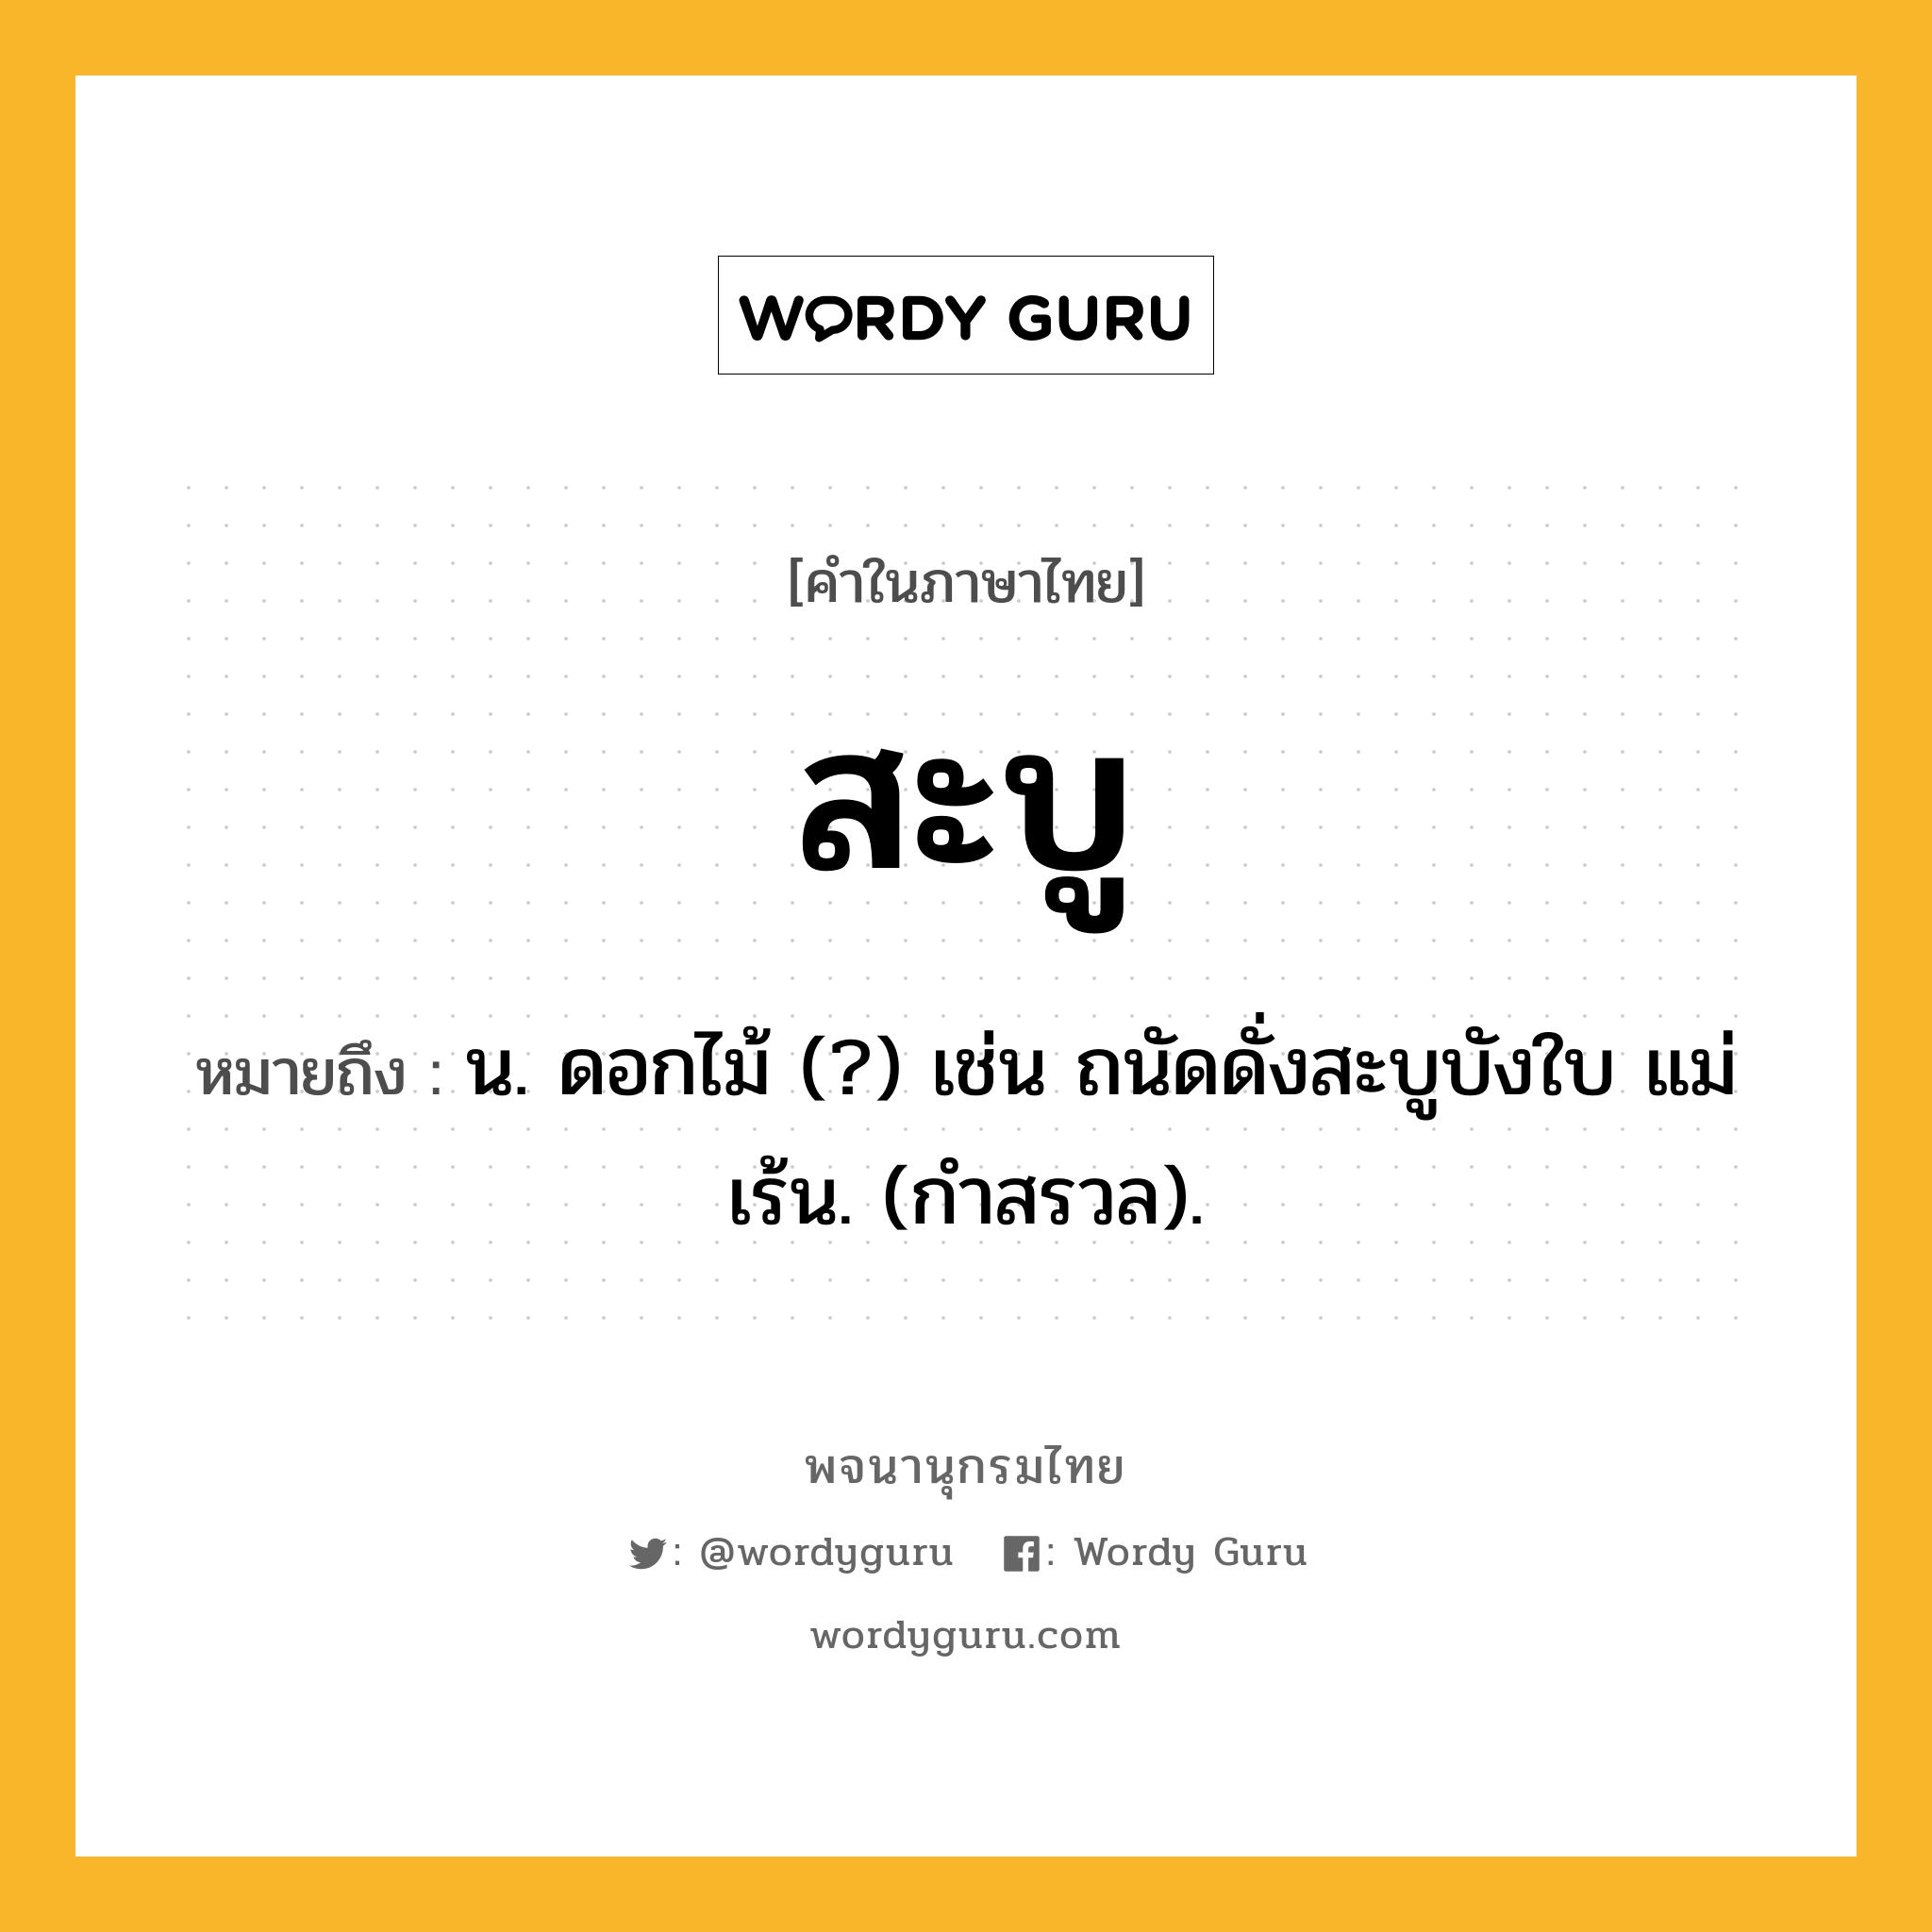 สะบู หมายถึงอะไร?, คำในภาษาไทย สะบู หมายถึง น. ดอกไม้ (?) เช่น ถนัดดั่งสะบูบังใบ แม่เร้น. (กําสรวล).